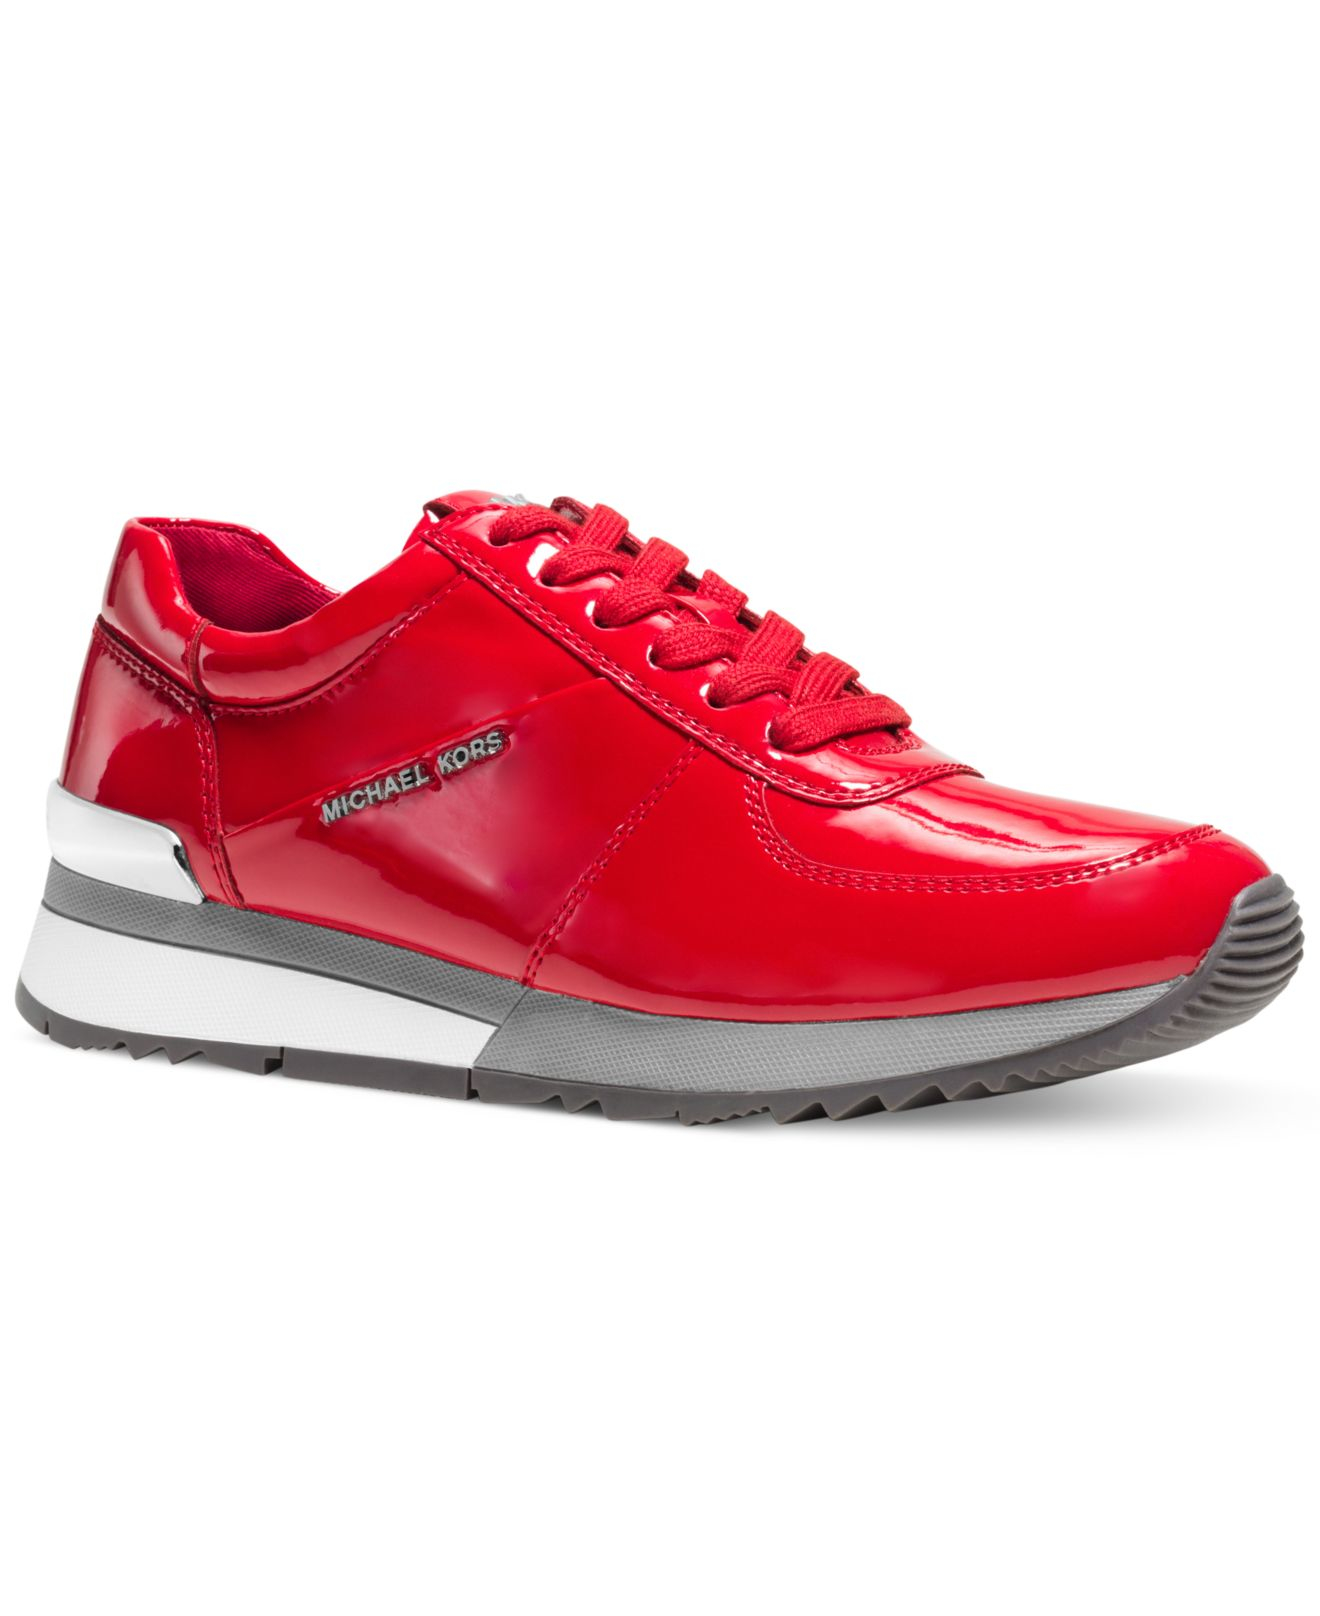 michael kors red quilted sneakers glam studded high top shoes - Marwood  VeneerMarwood Veneer